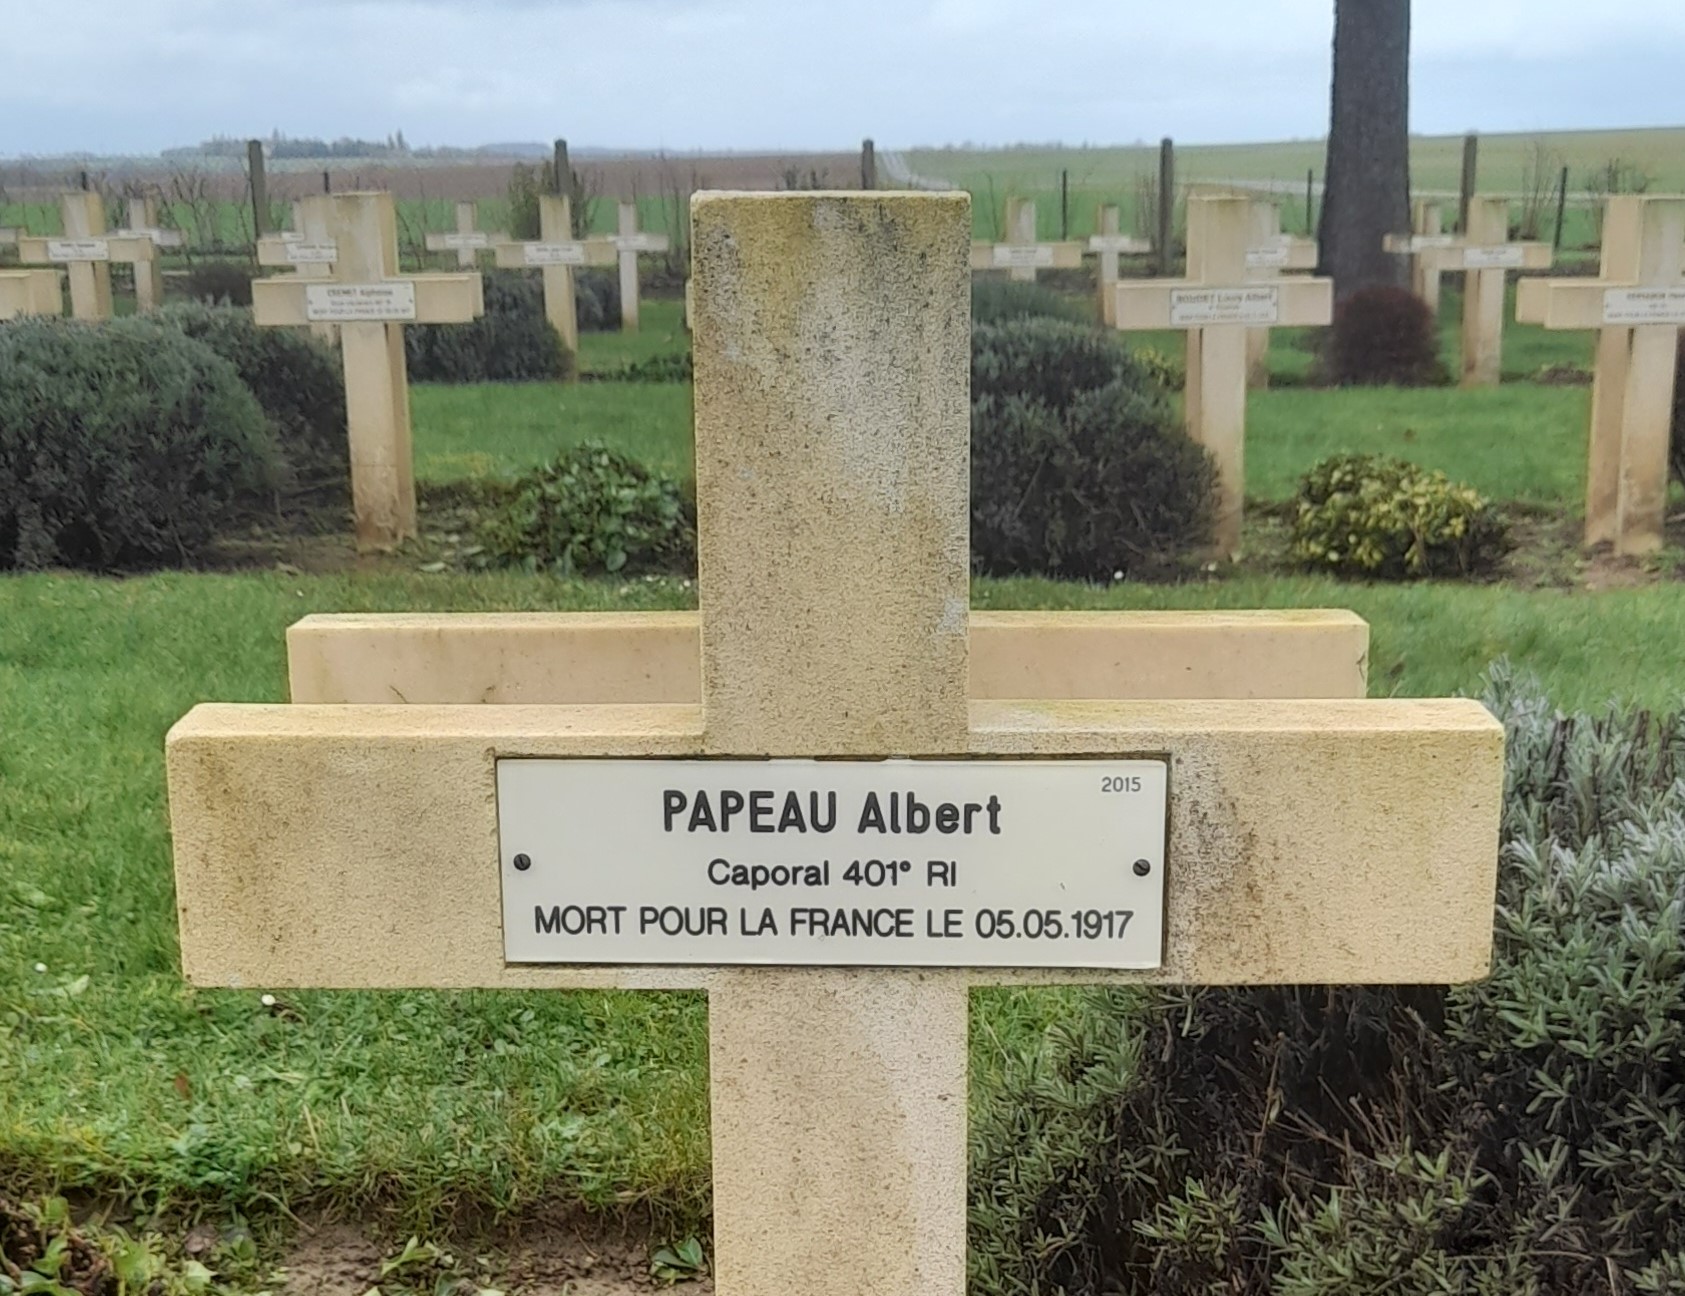 Papeau Albert Germain sépulture à Cerny en Laonnois (02)